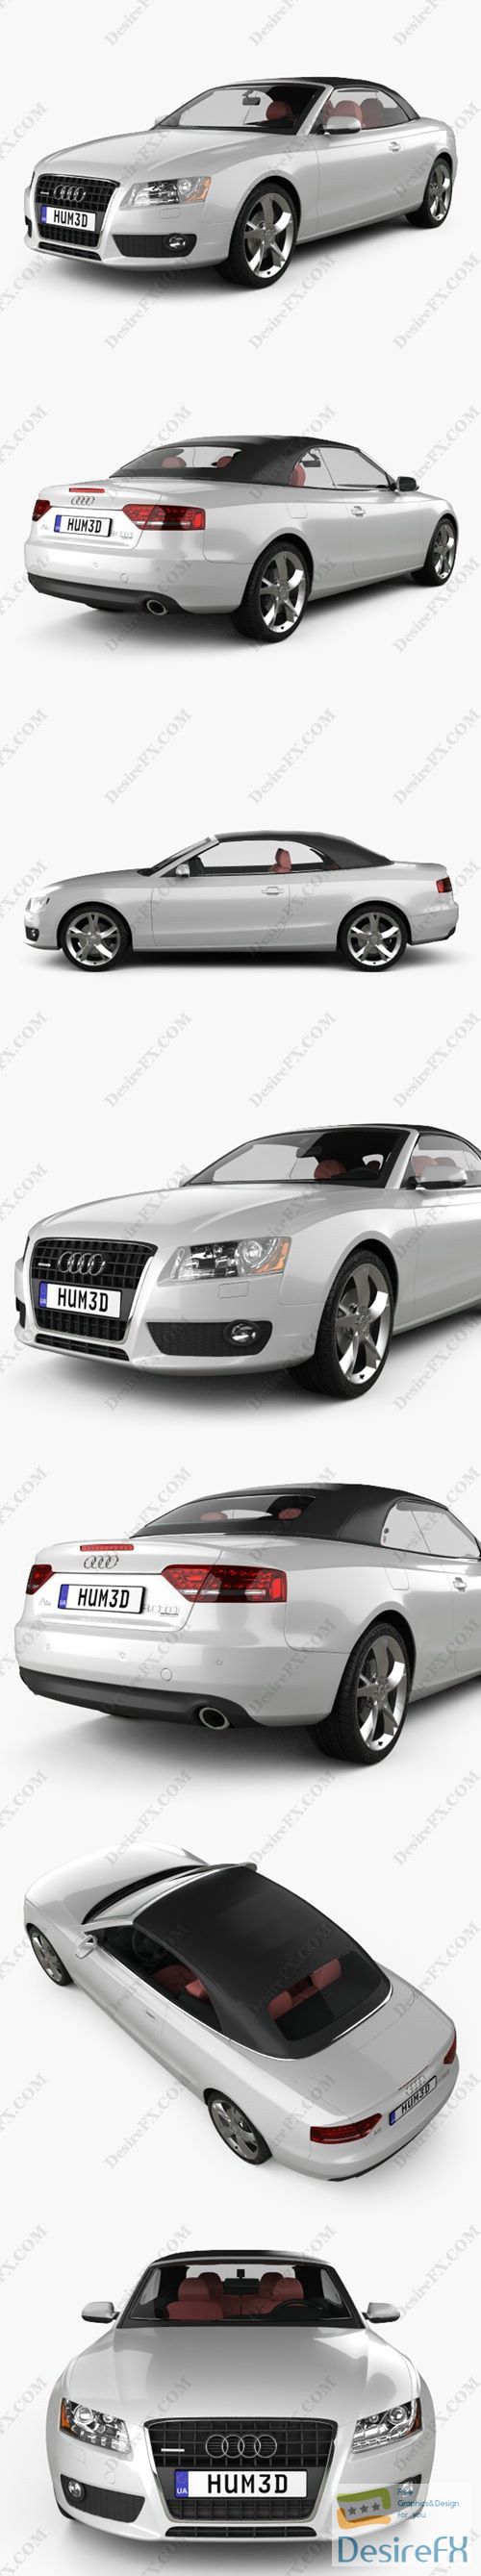 Audi A5 Convertible 2010 3D Model